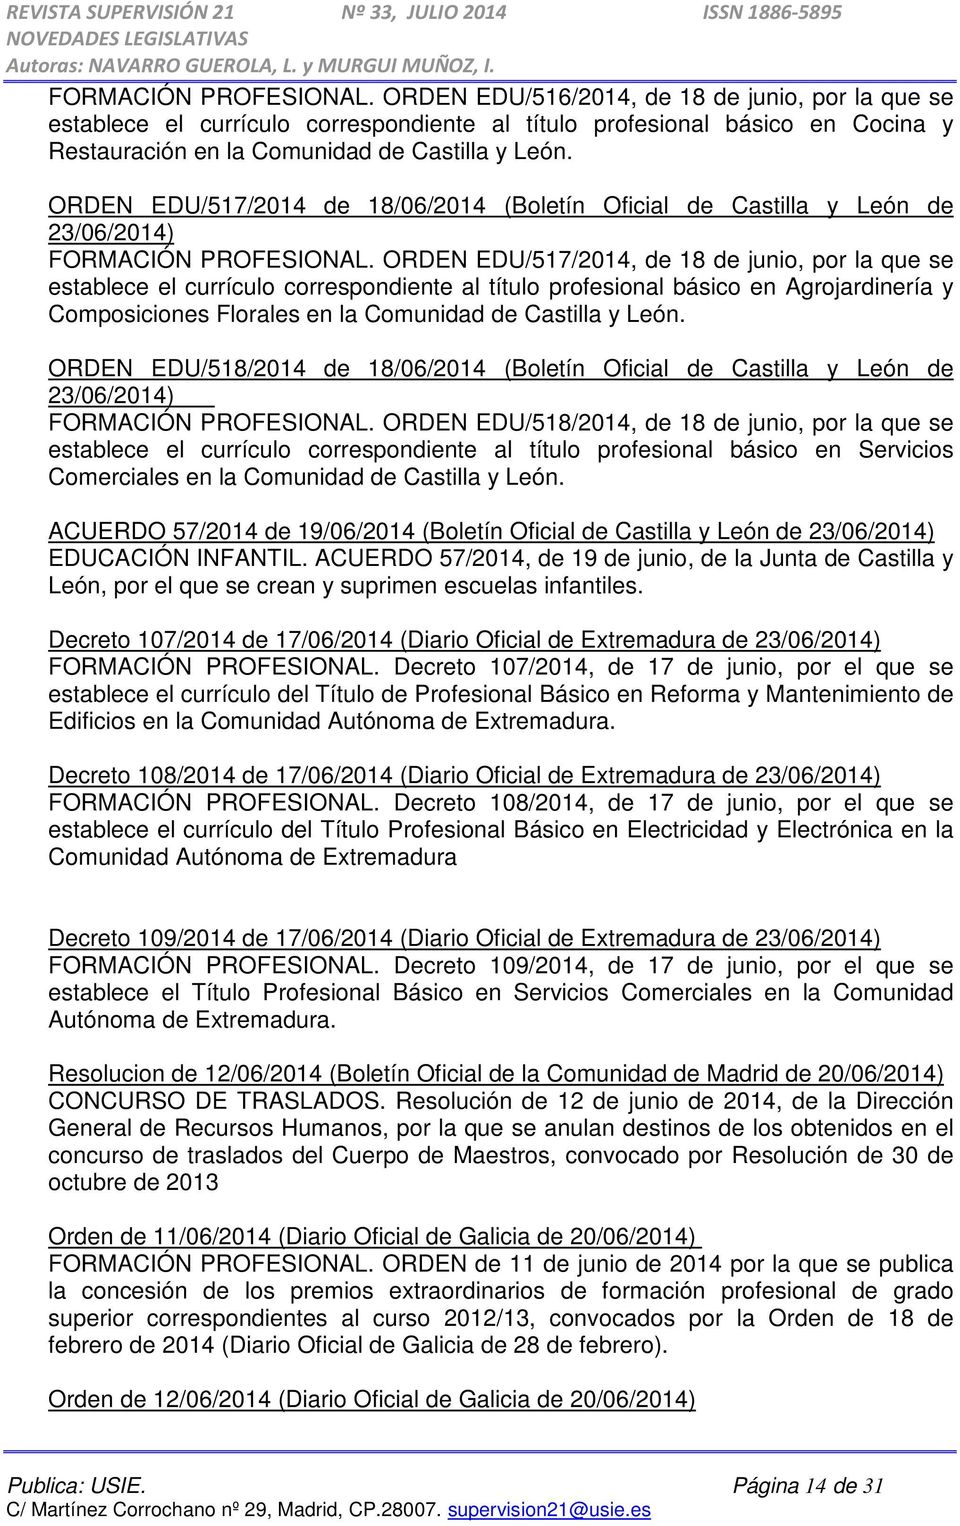 ORDEN EDU/517/2014 de 18/06/2014 (Boletín Oficial de Castilla y León de  ORDEN EDU/517/2014, de 18 de junio, por la que se establece el currículo correspondiente al título profesional básico en